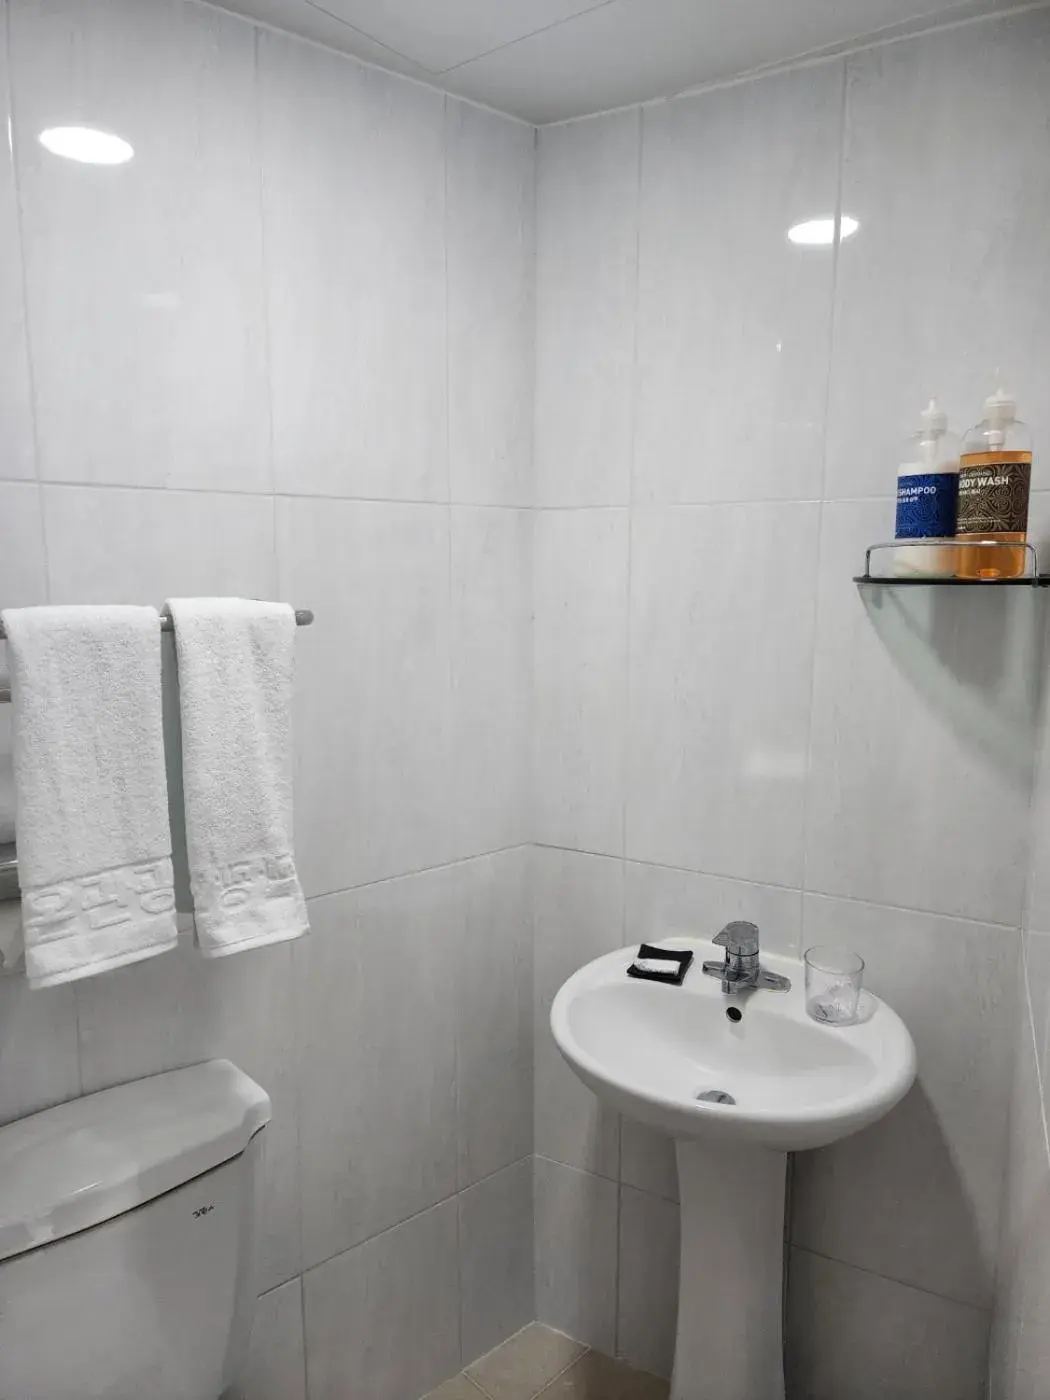 Bathroom in Rezion Hotel